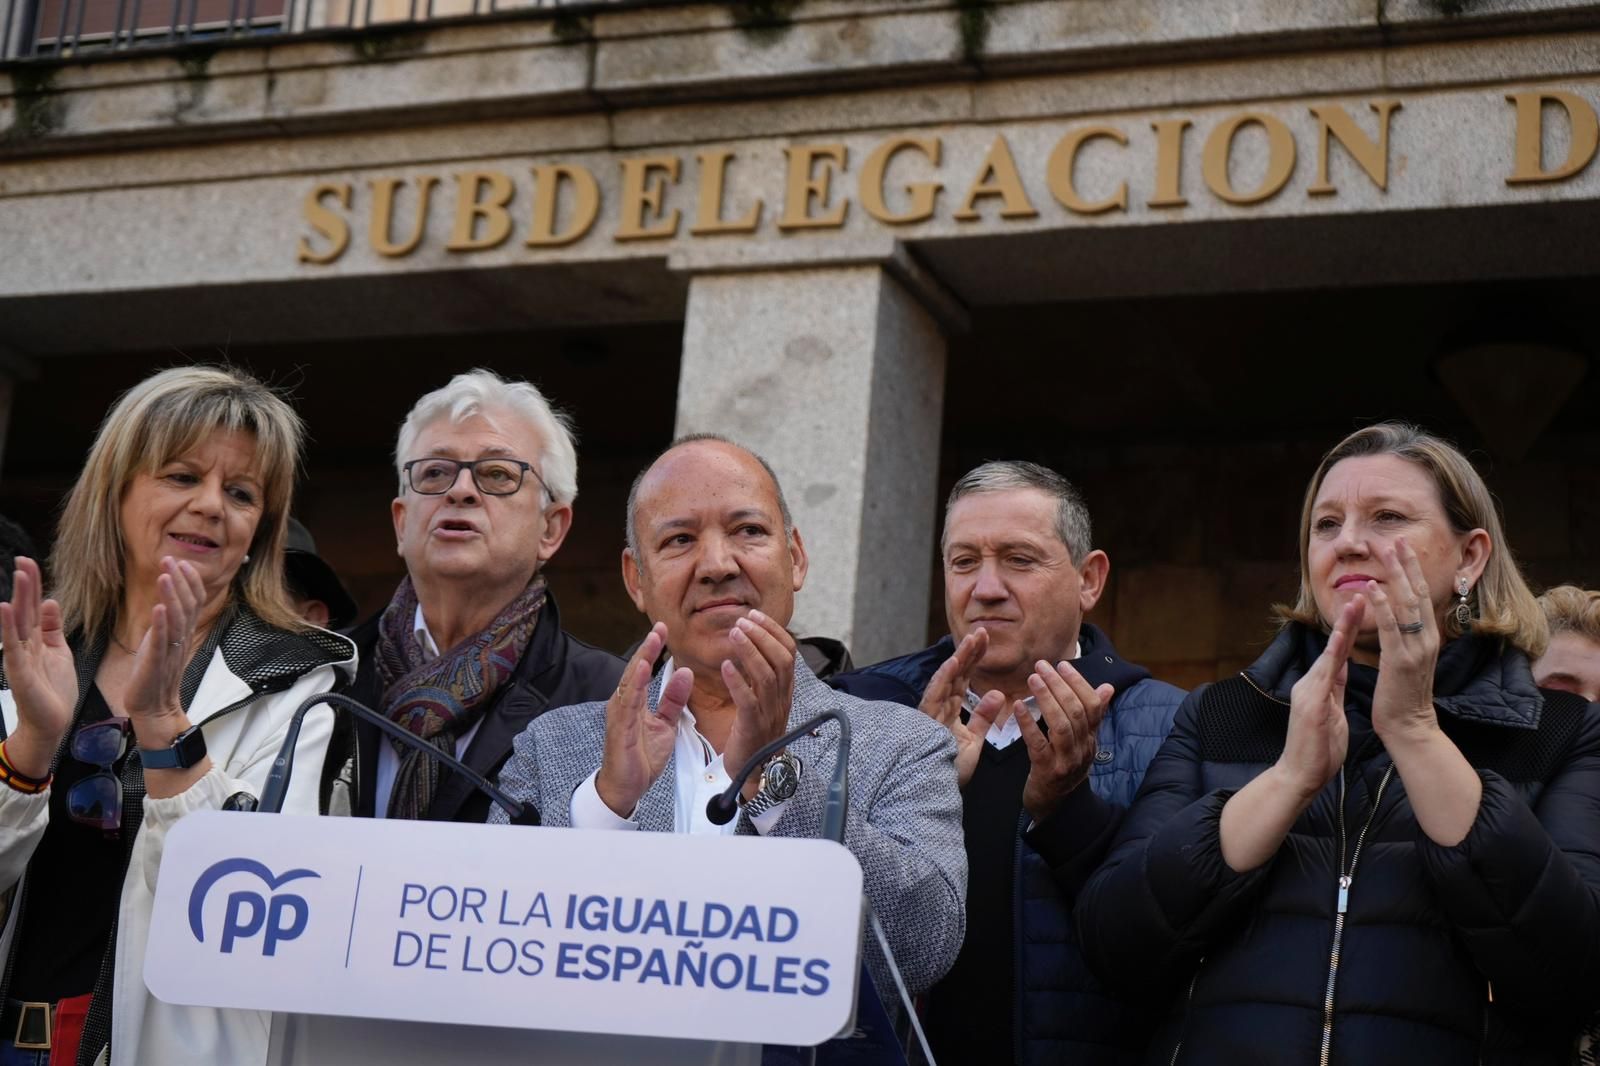 GALERÍA | La manifestación contra la amnistía de Pedro Sánchez, en imágenes